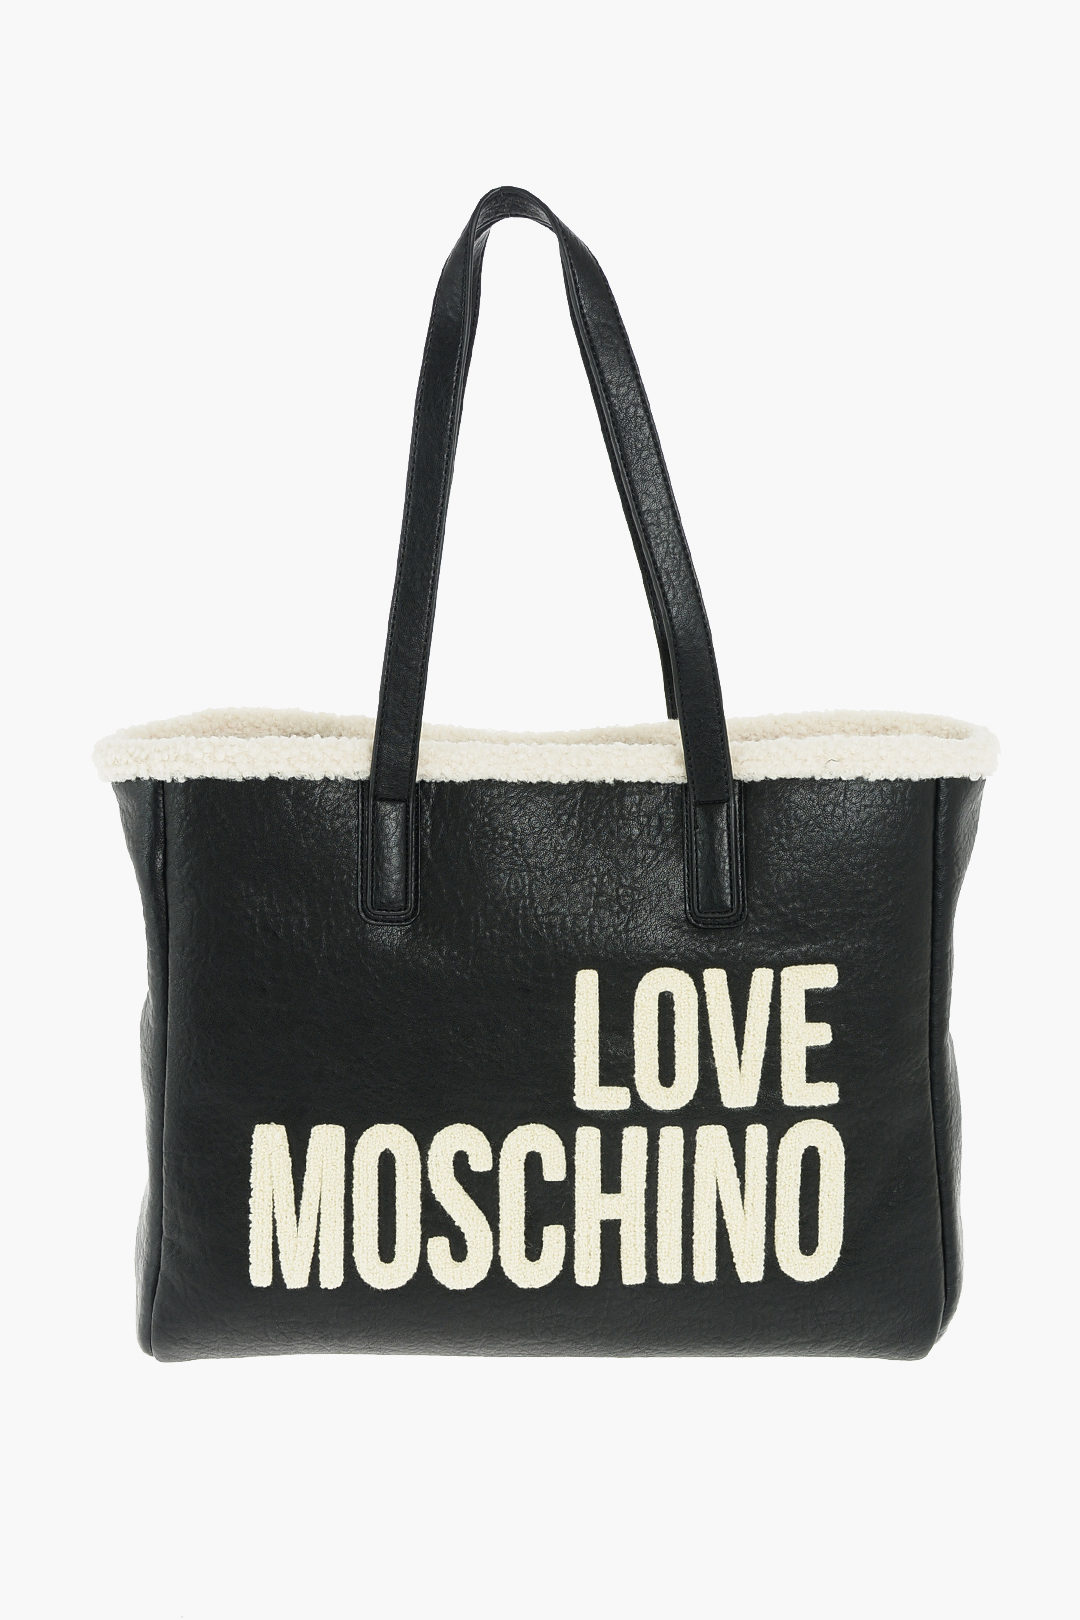 Non-Leather Handbags Love Moschino Women Non-Leather Handbag LOVE MOSCHINO black Women Bags Love Moschino Women Non-Leather Bags Love Moschino Women Non-Leather Handbags Love Moschino Women 